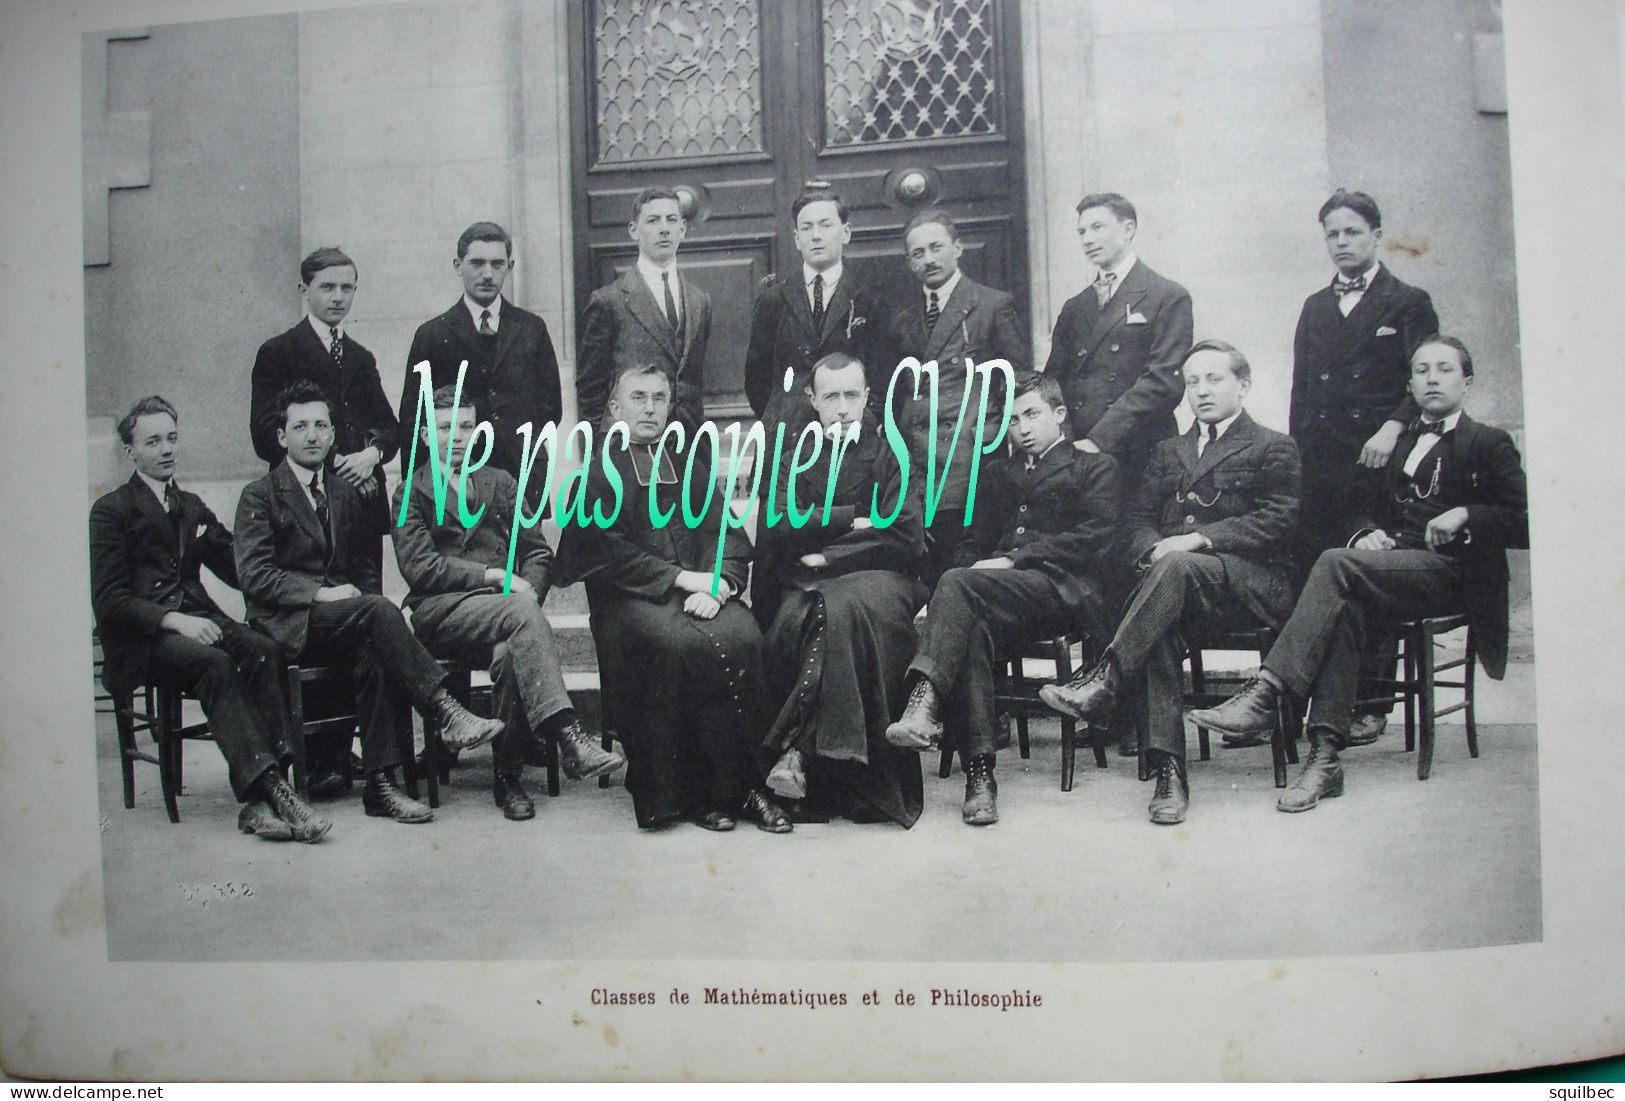 ALBUM de 1921 institution SAINTE MARIE à BOURGES (18) seize photos grand format des lieux et des élèves